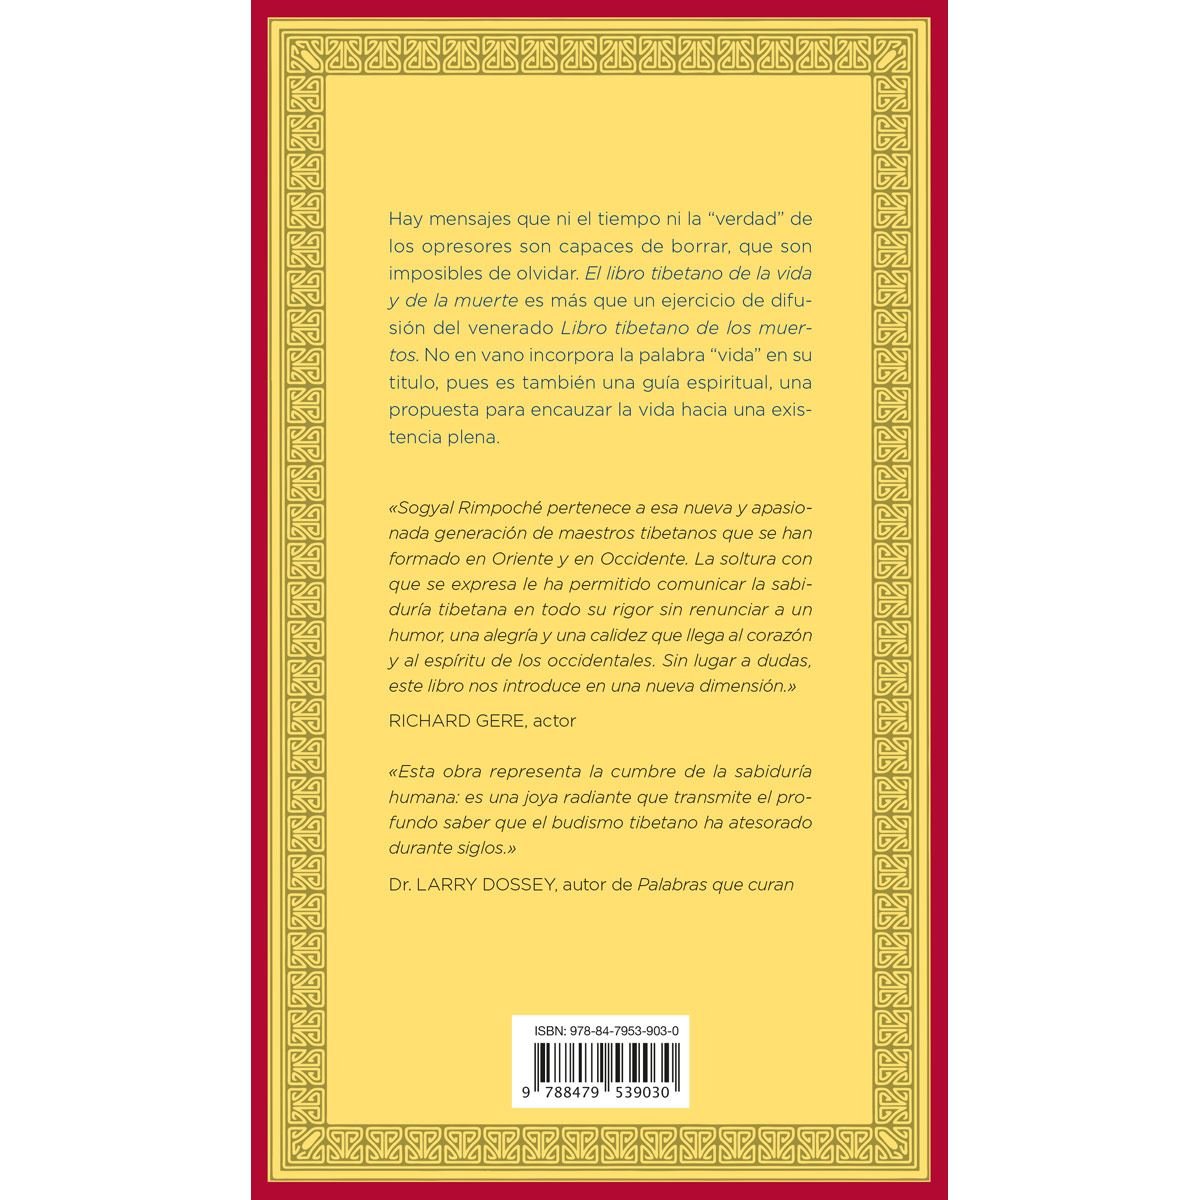 El libro tibetano de la muerte – NALANDA